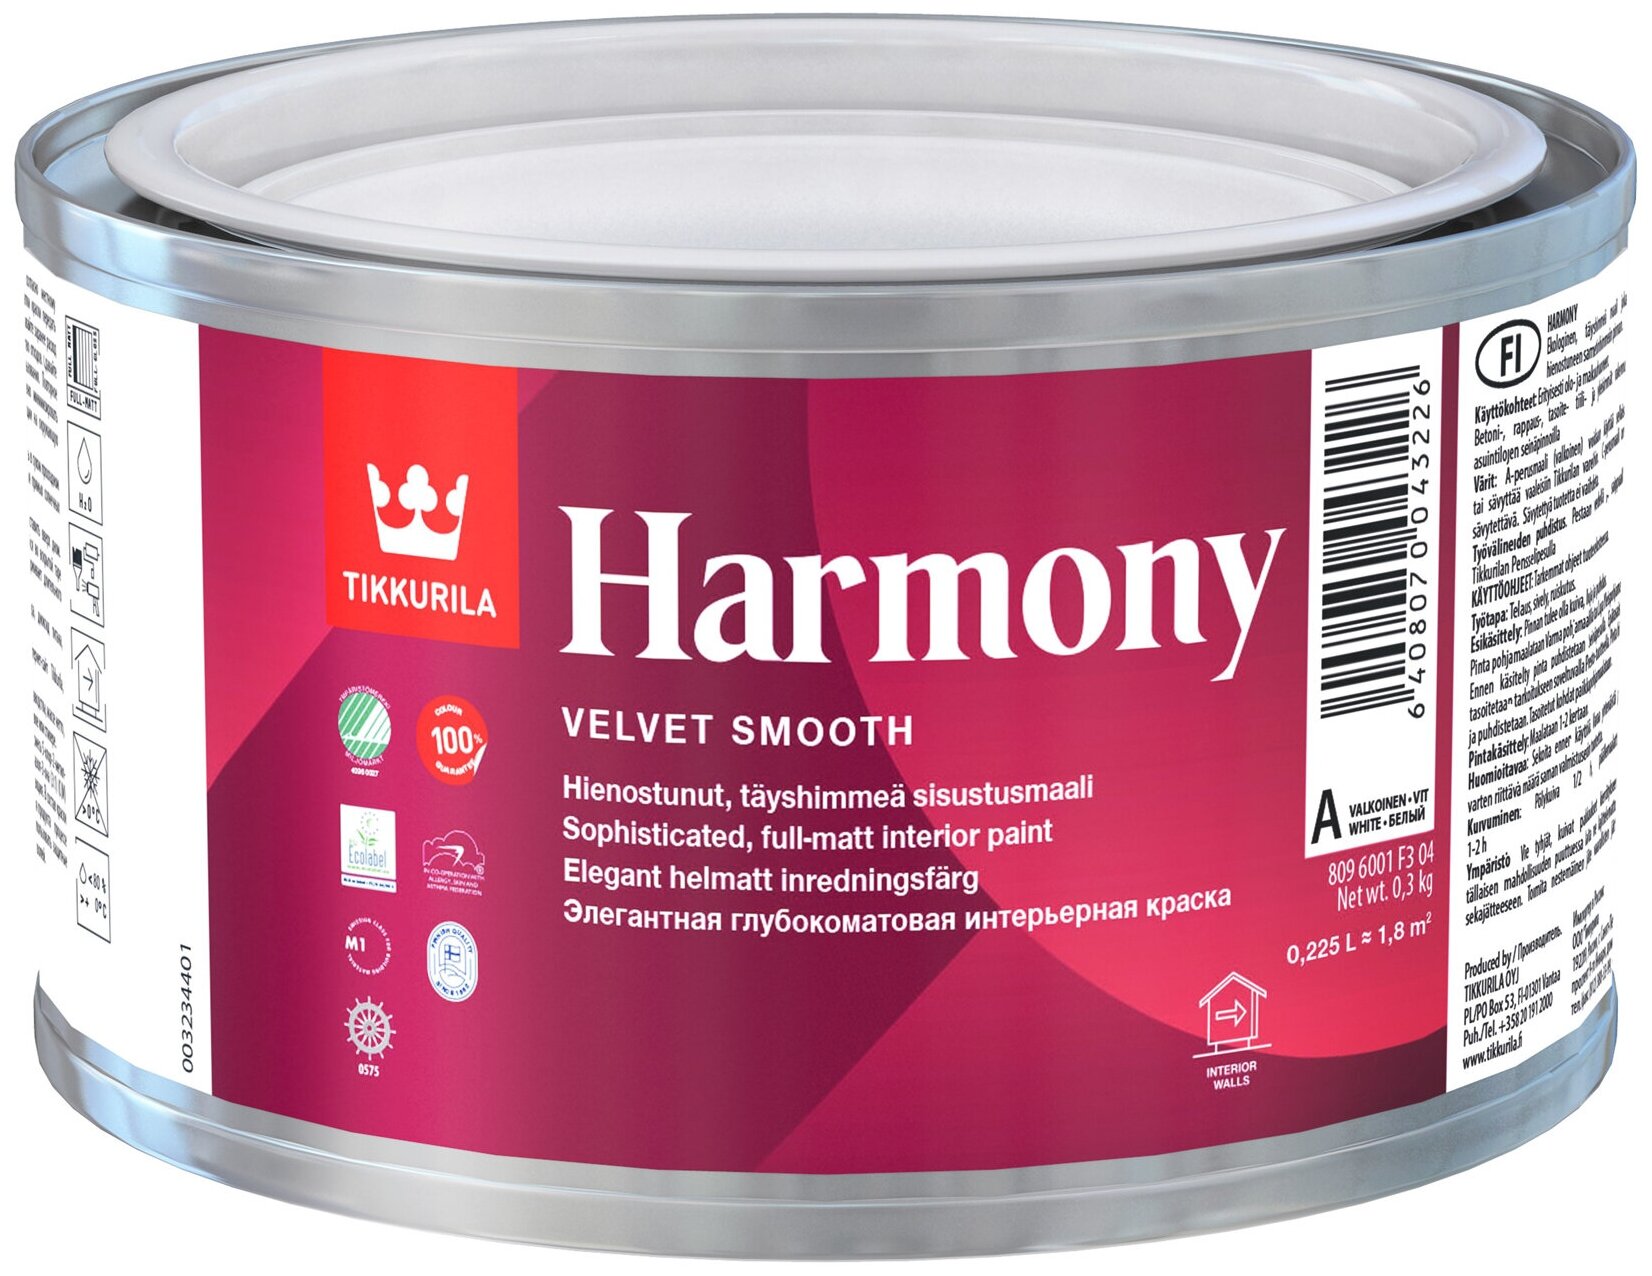      Tikkurila Harmony  , ,  (0,225)